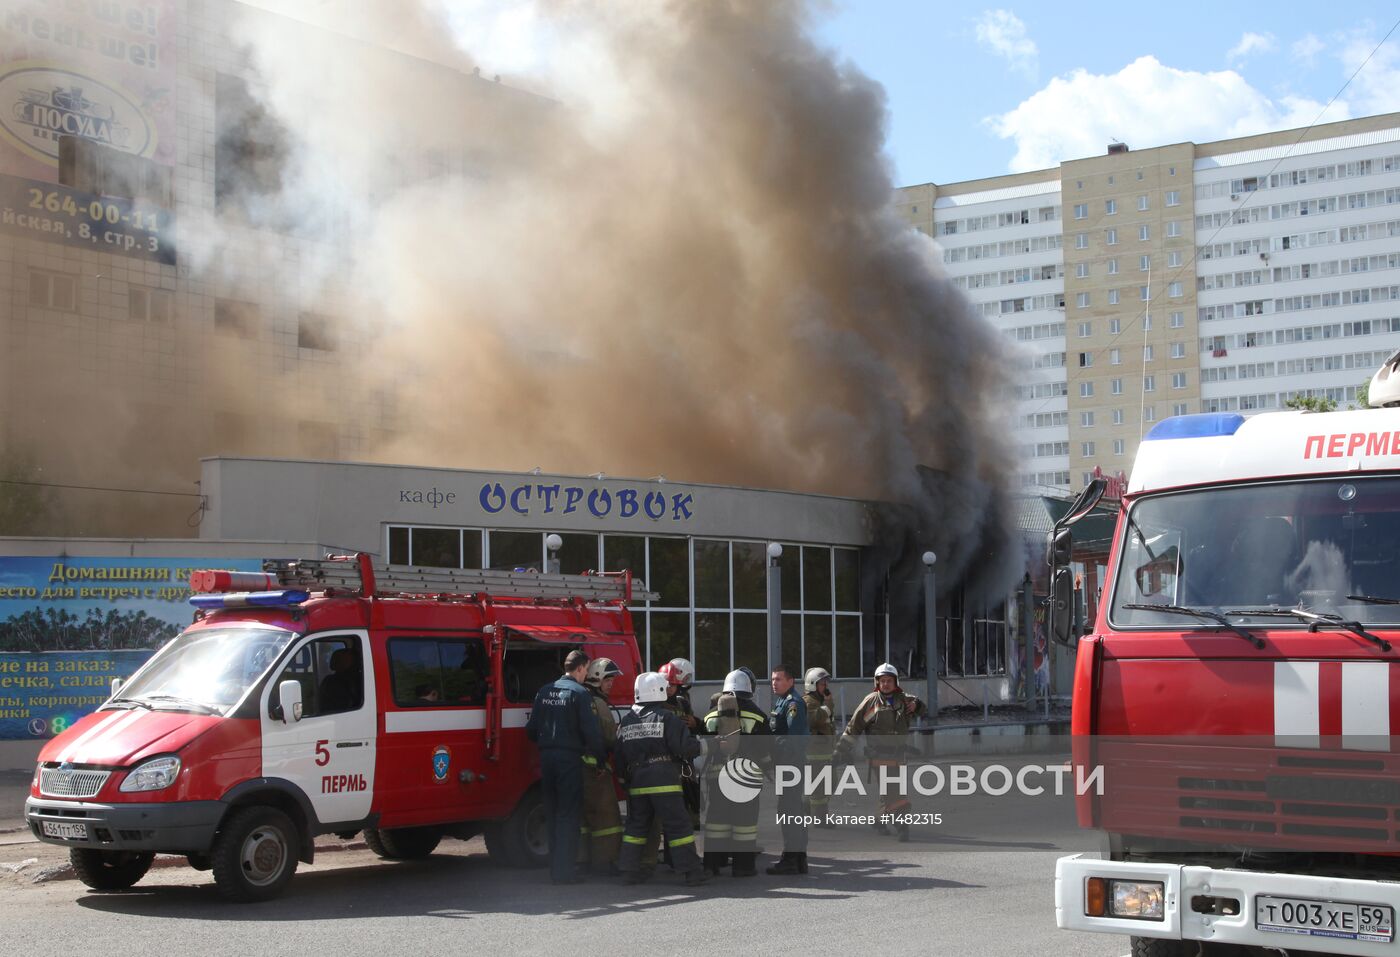 Пожар в магазине пиротехники в Перми